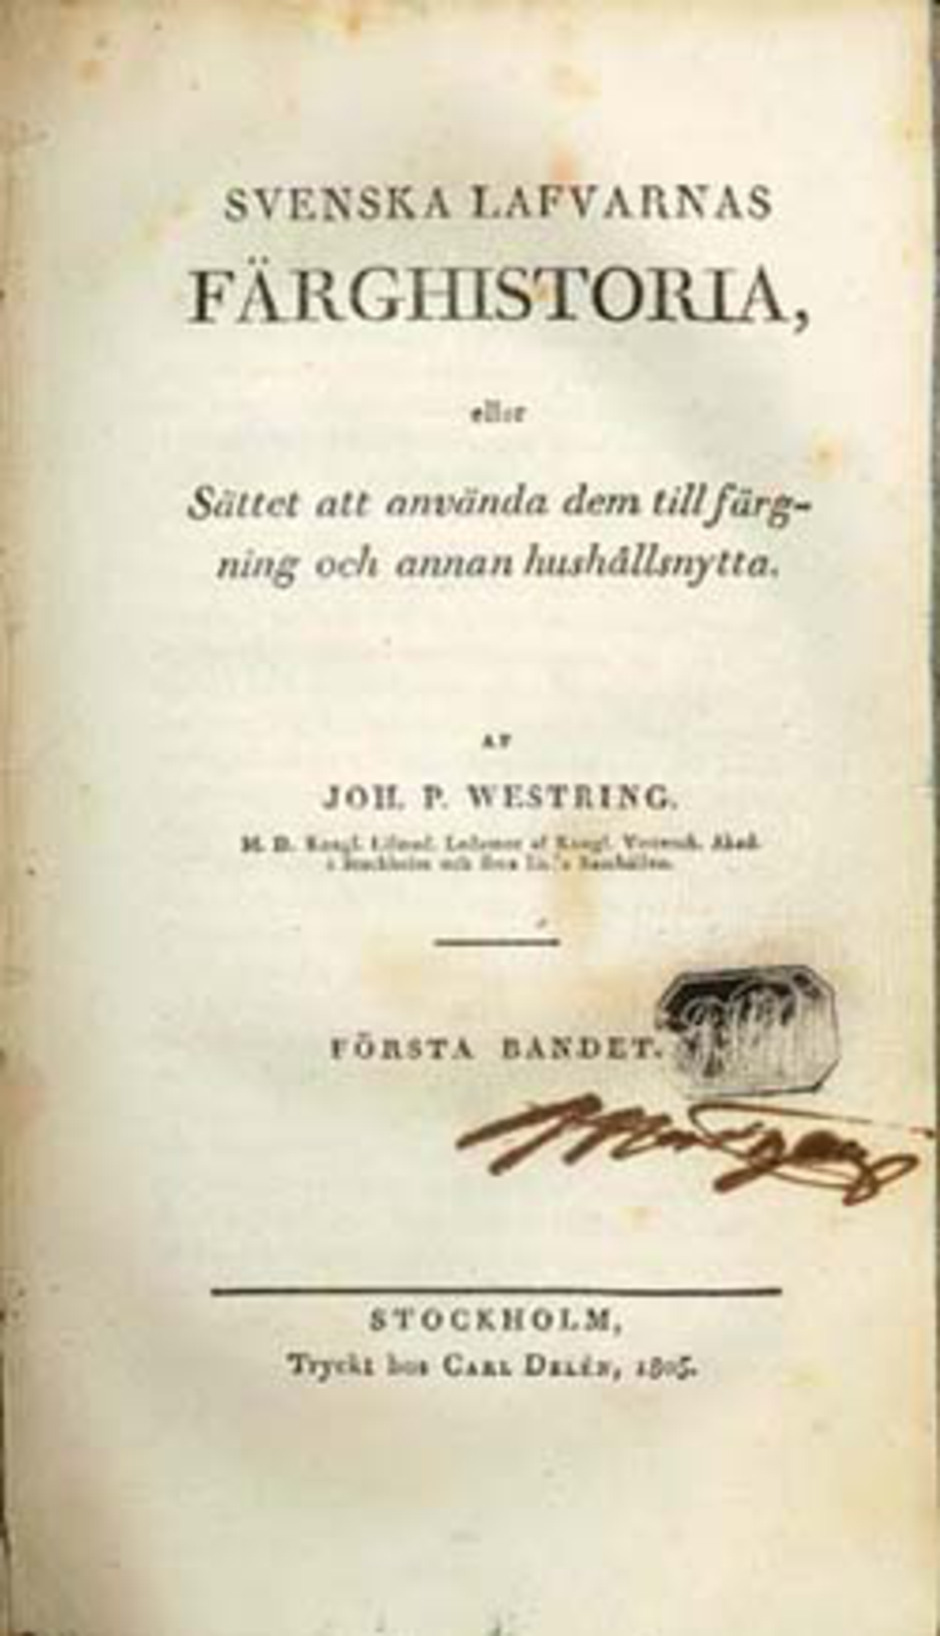 Titelsida ur Svenska lafvarnas färghistoria, eller sättet att använda dem till färgning och annan hushållsnytta av J. P. Westring, 1805